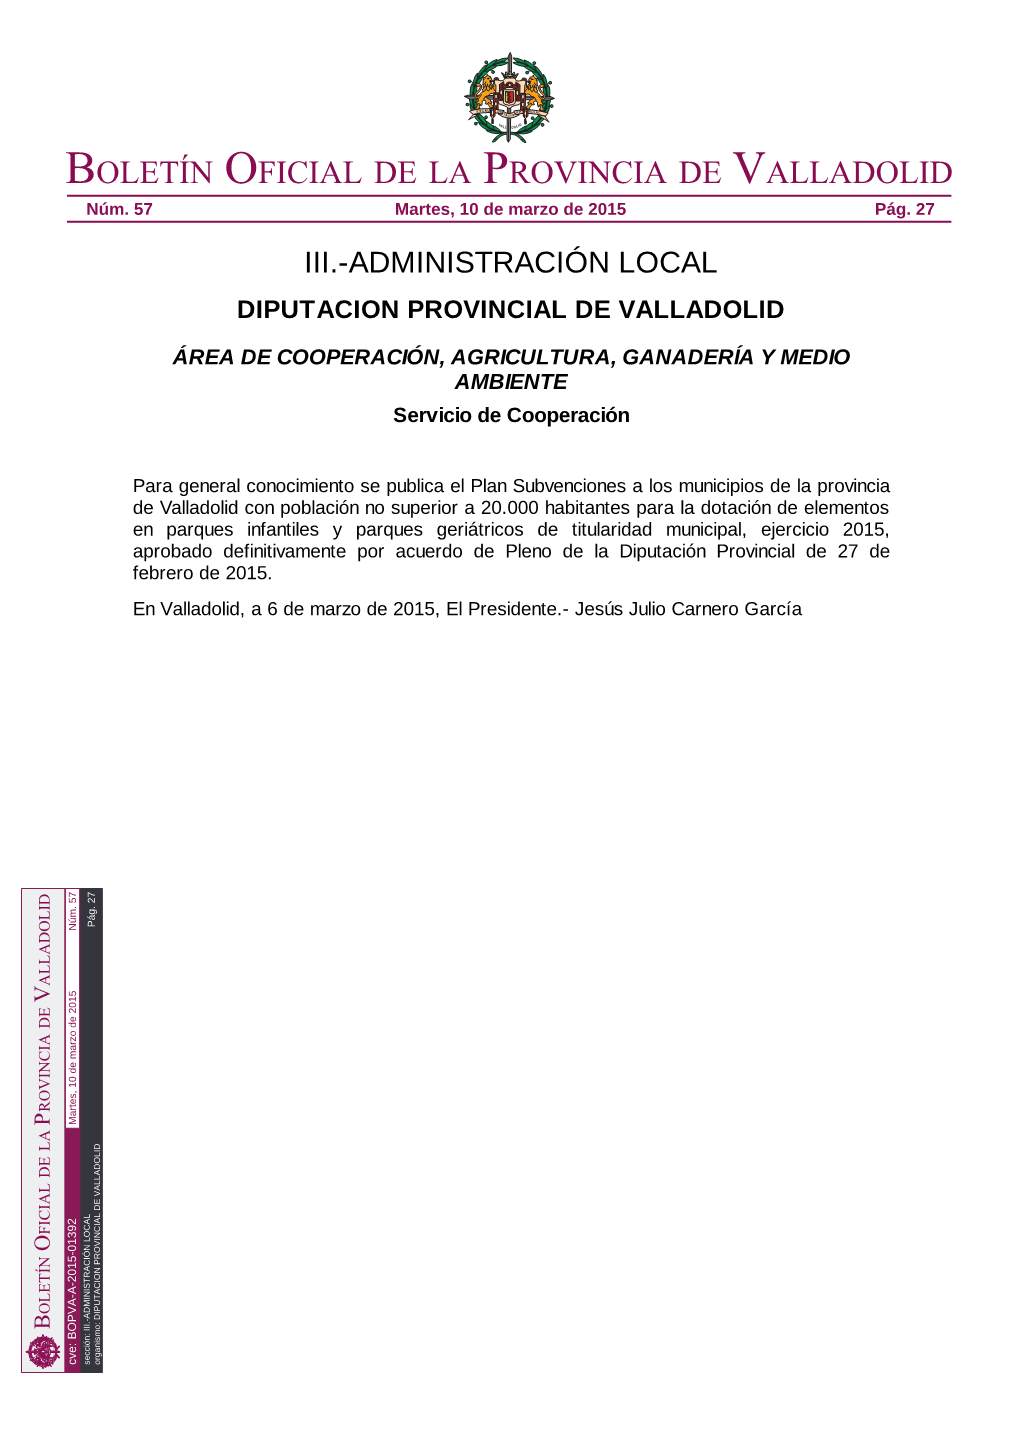 BOPVA-A-2015-01392 Sección: III.-ADMINISTRACIÓN LOCAL Organismo: DIPUTACION PROVINCIAL DE VALLADOLID Boletín Oficial De La Provincia De Valladolid